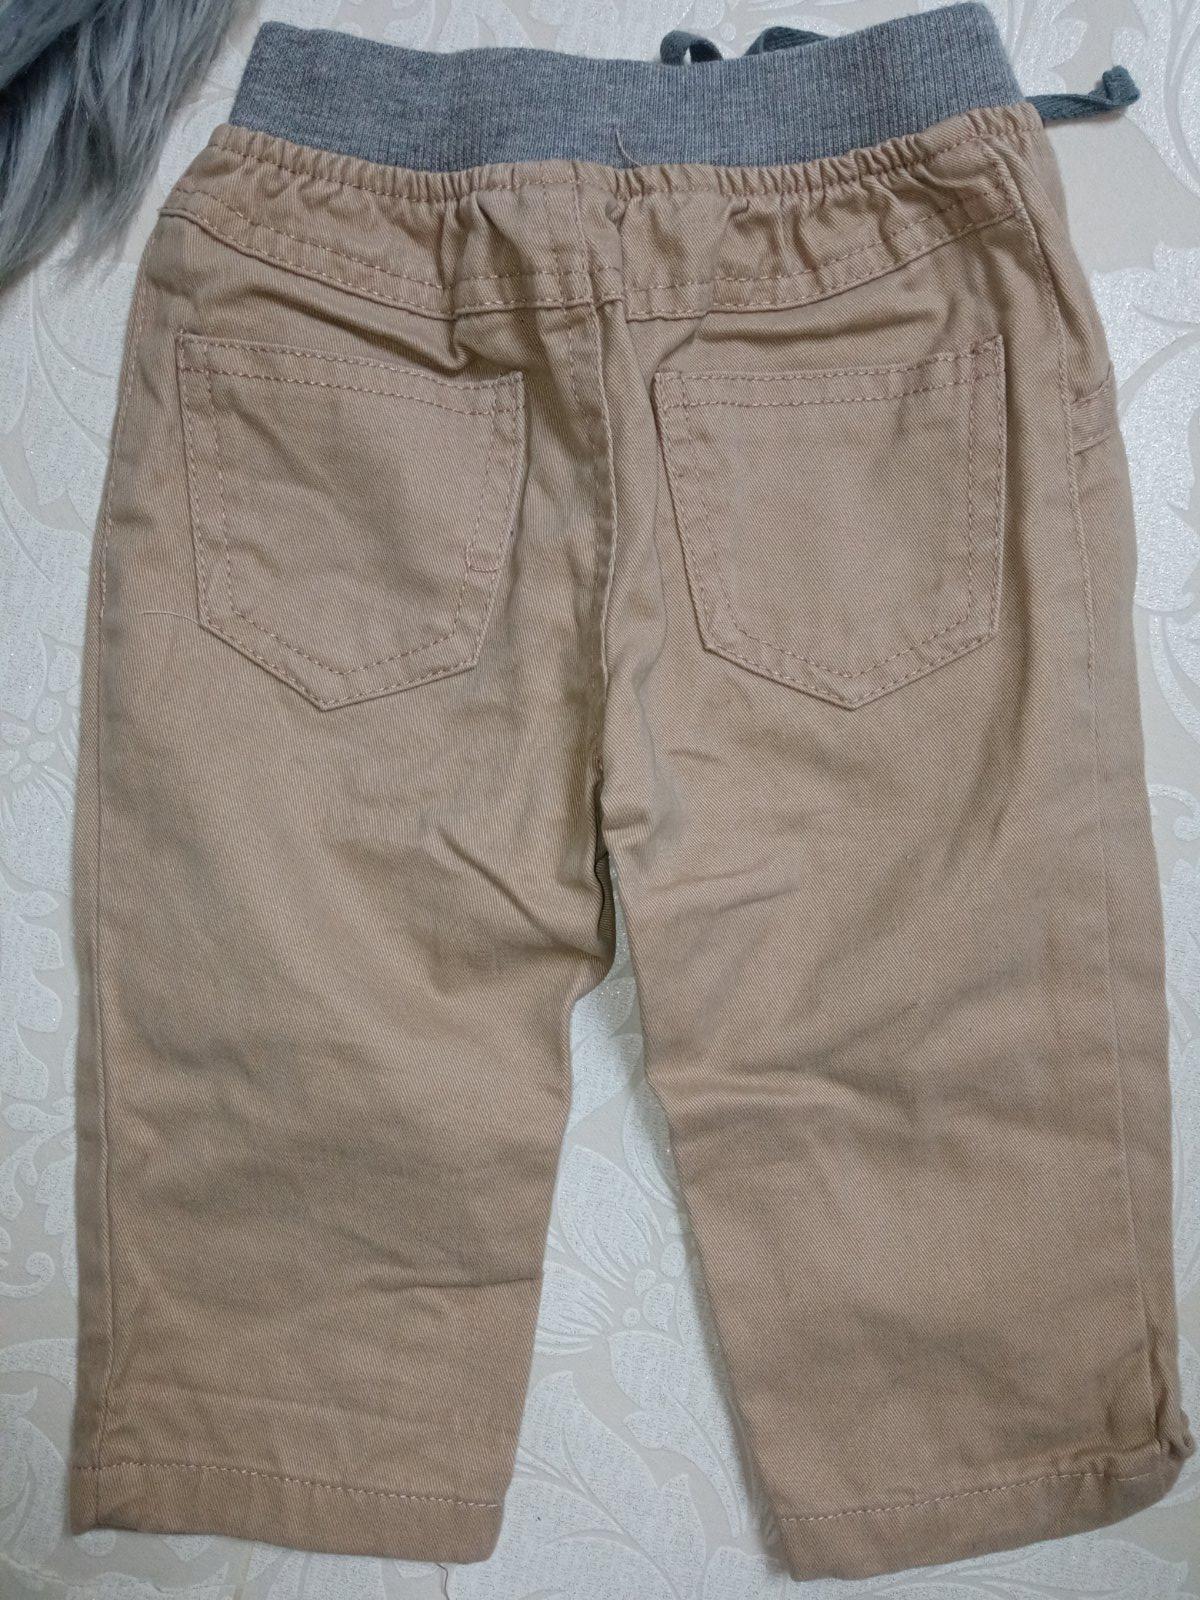 Hnedé nohavice so sivým pásom (6-9 mes.)